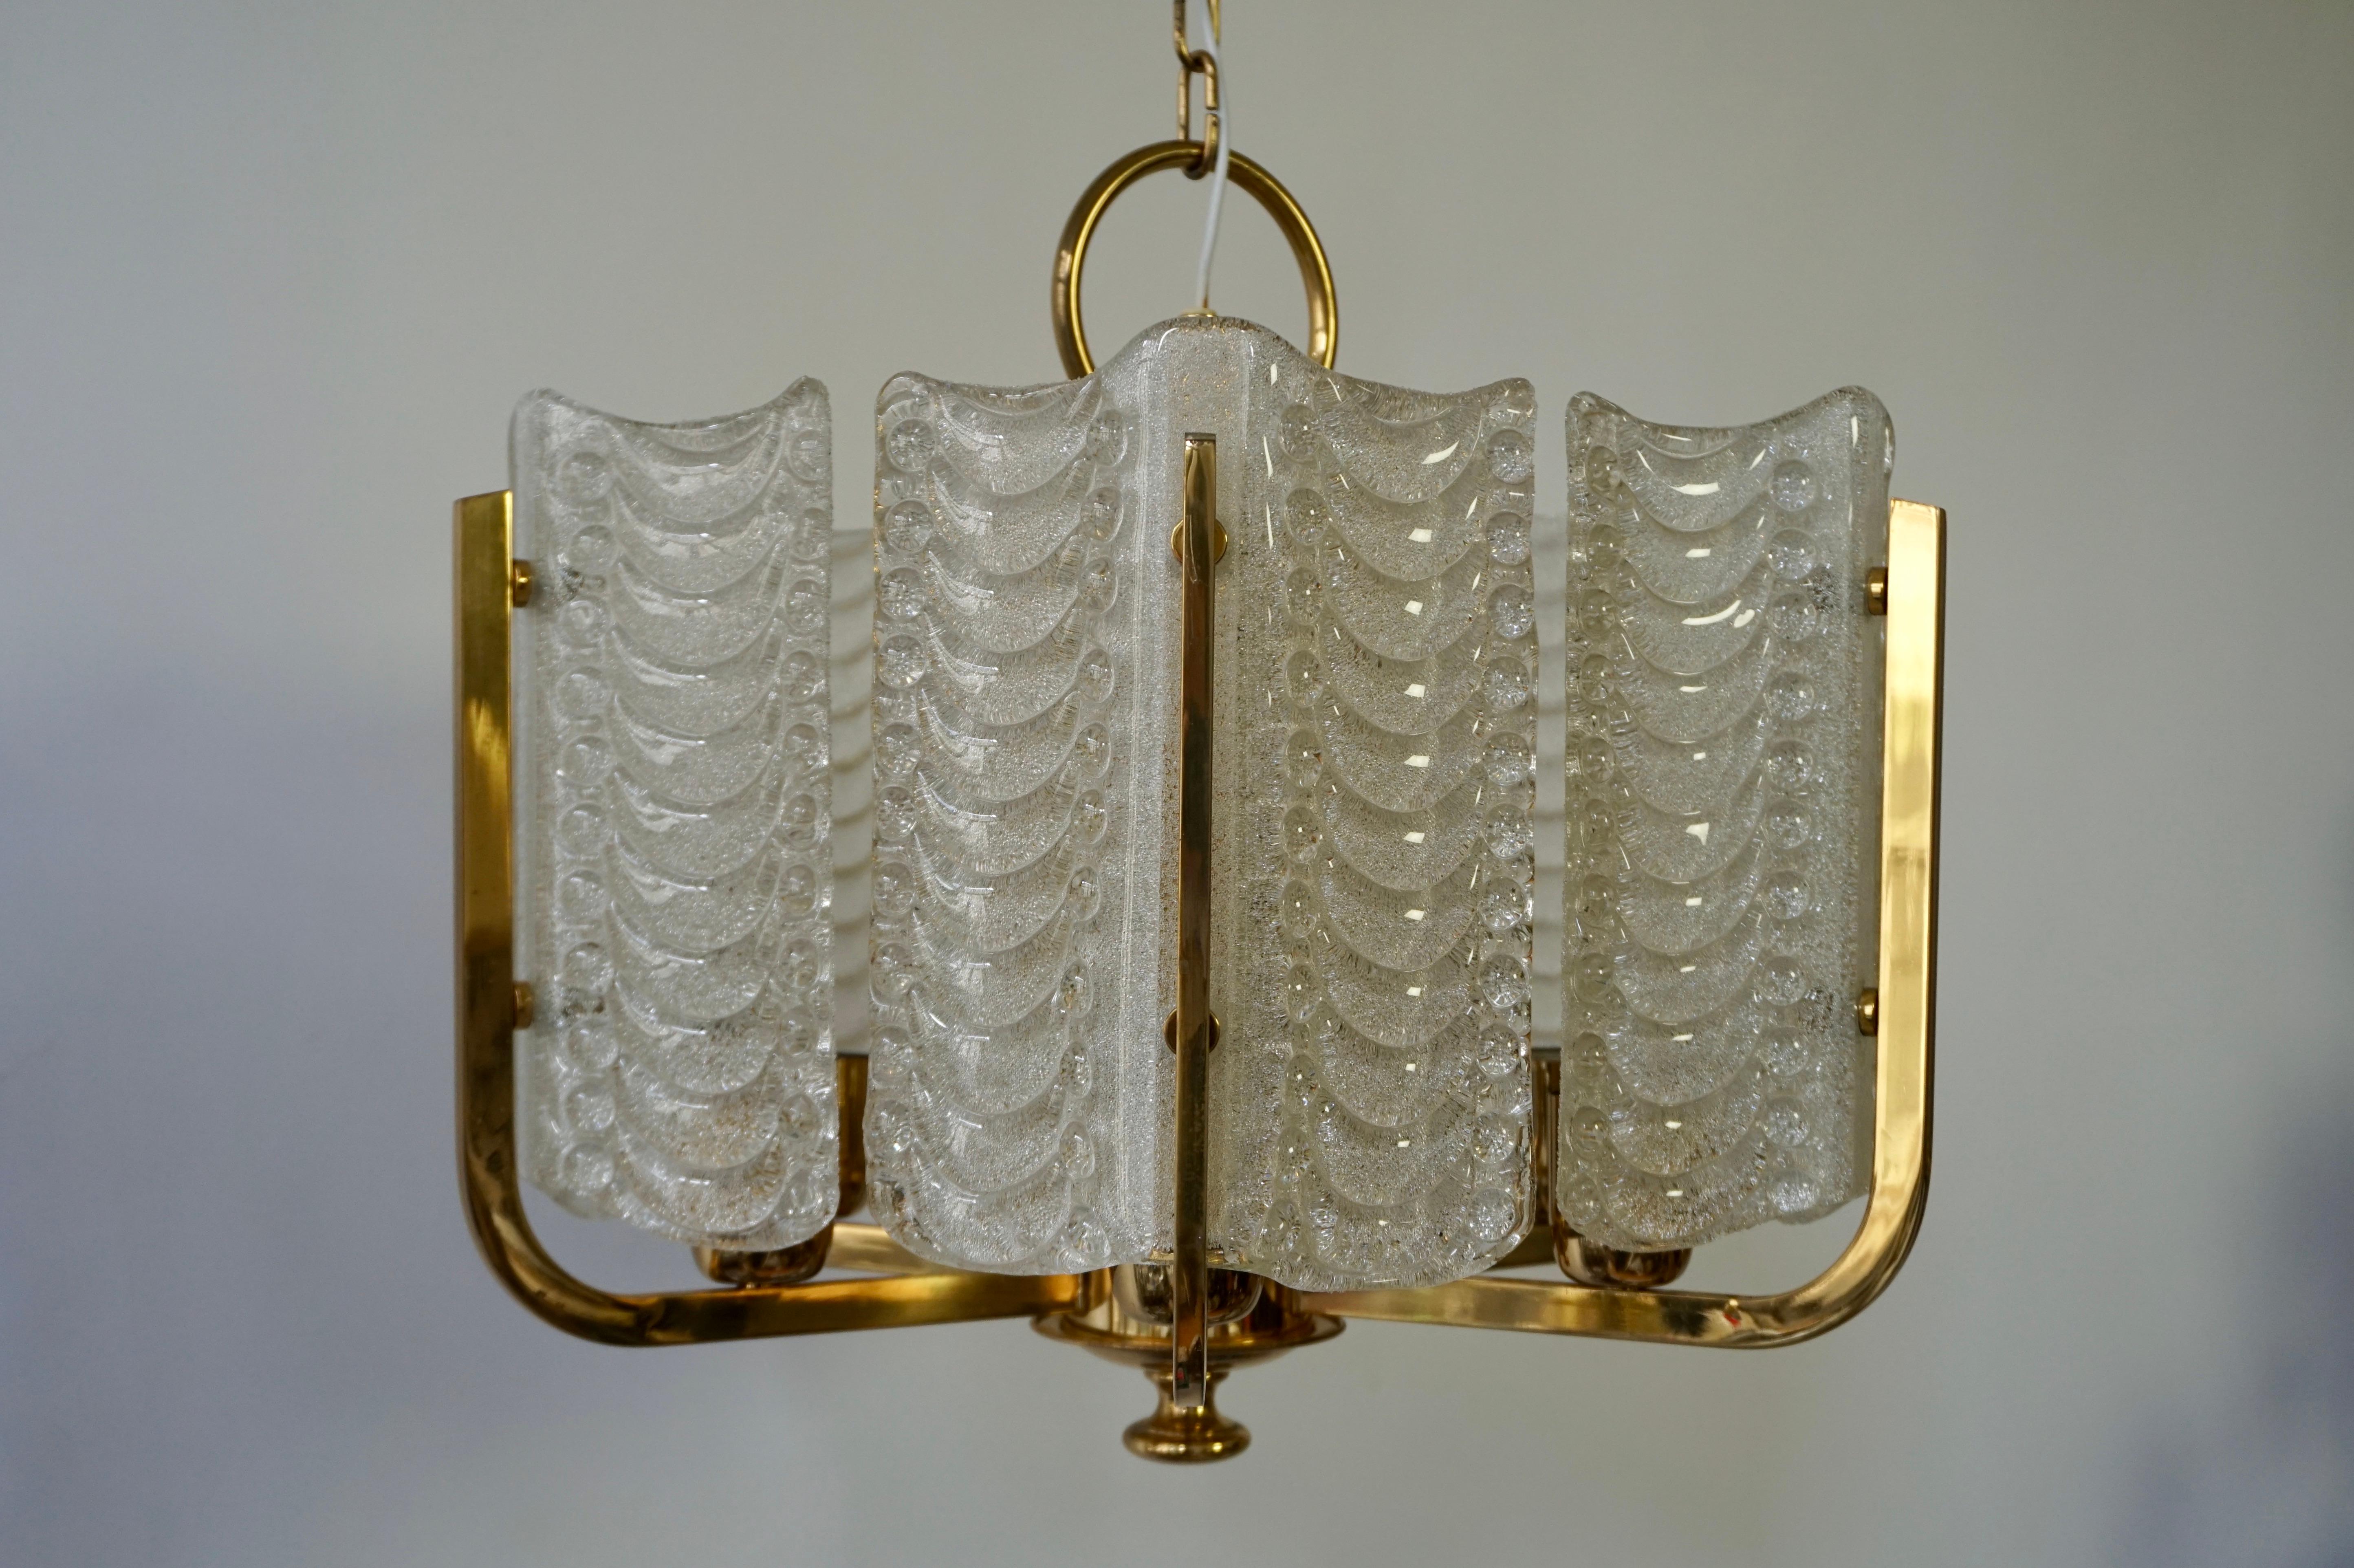 Eine hübsche Hängelampe aus gebogenem Muranoglas, die an einer Messingkette aufgehängt ist, perfekt für ein Wohnzimmer, ein Badezimmer oder einen Eingangsbereich.
Durchmesser 48 cm.
Höhe Halterung 41 cm.
Gesamthöhe 80 cm.
Sechs E27-Glühbirnen.